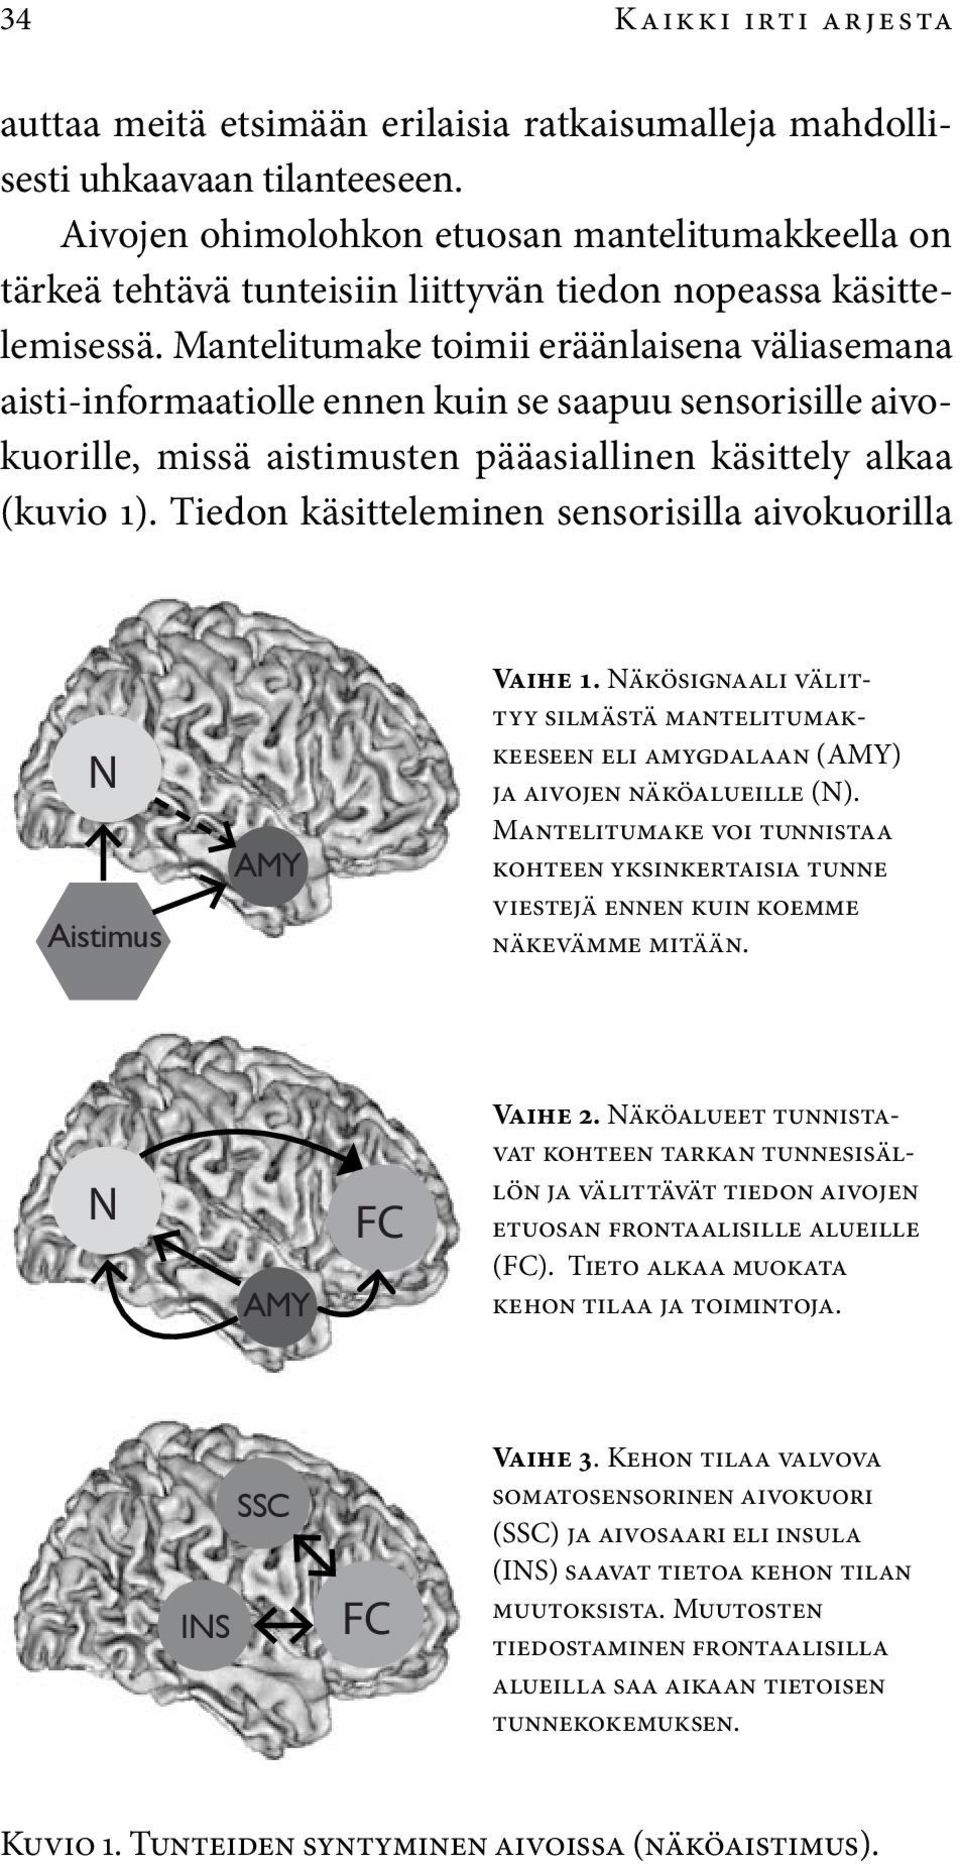 Mantelitumake toimii eräänlaisena väliasemana aisti-informaatiolle ennen kuin se saapuu sensorisille aivokuorille, missä aistimusten pääasiallinen käsittely alkaa (kuvio 1).